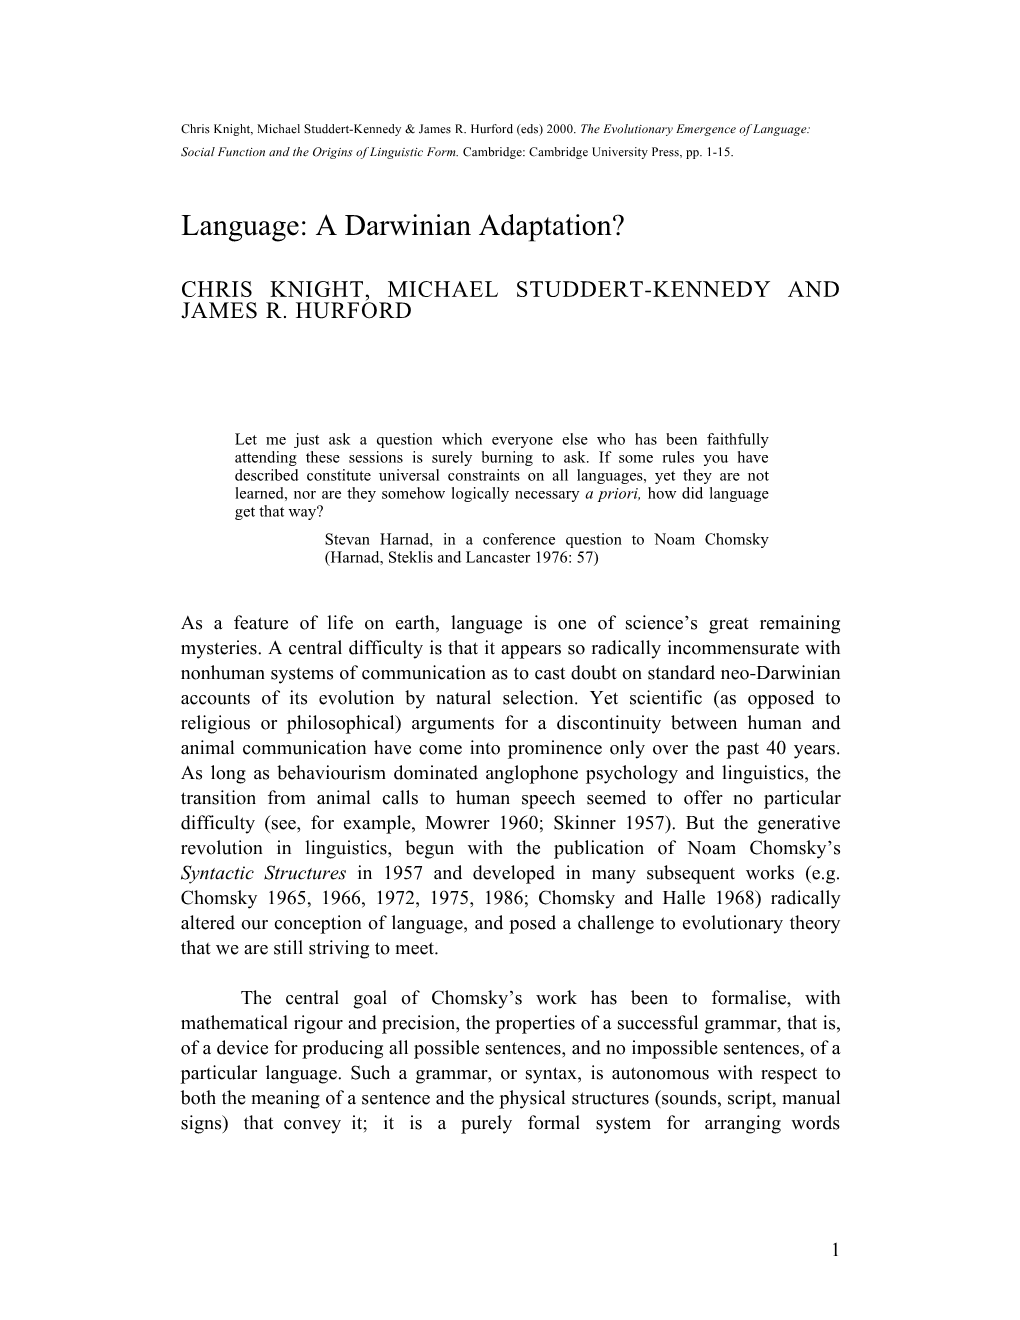 Language: a Darwinian Adaptation?